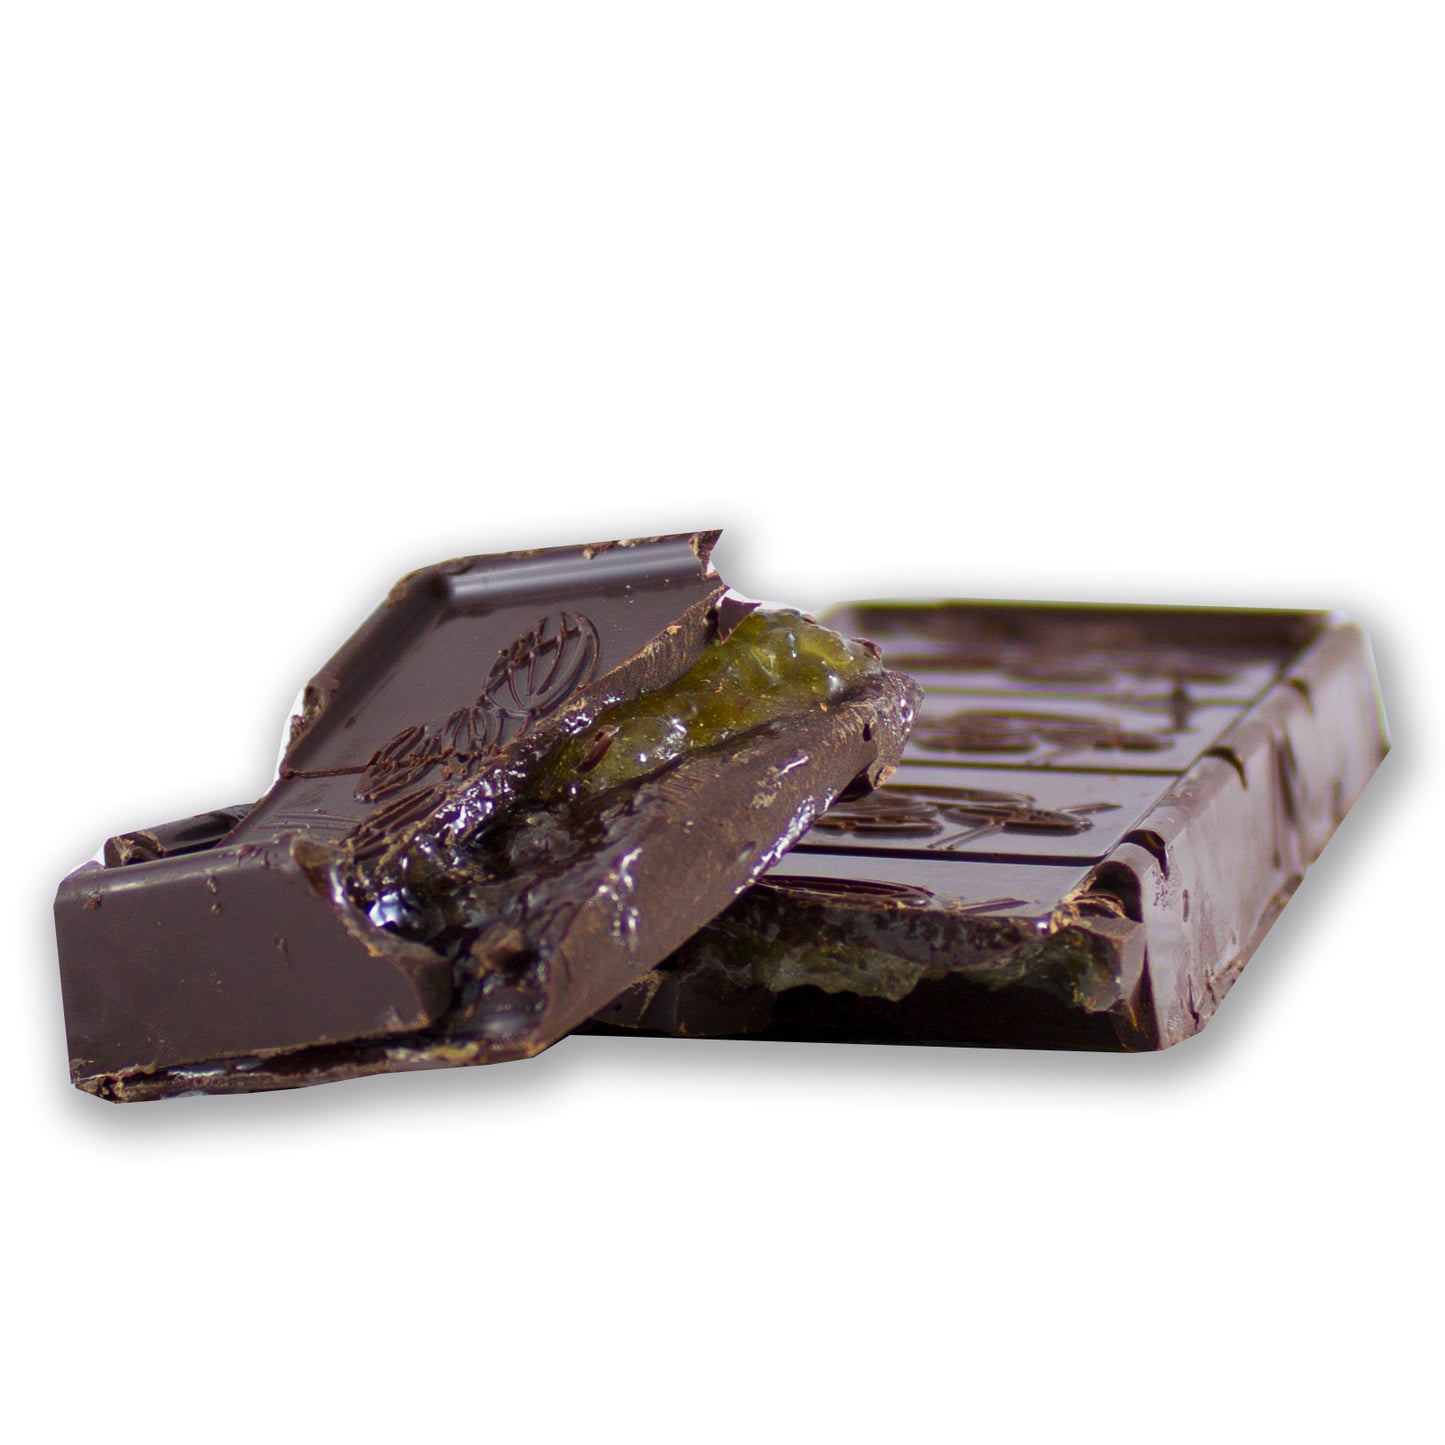 Tavoletta di cioccolato extra fondente ripiena con crema al fichi Calabresi